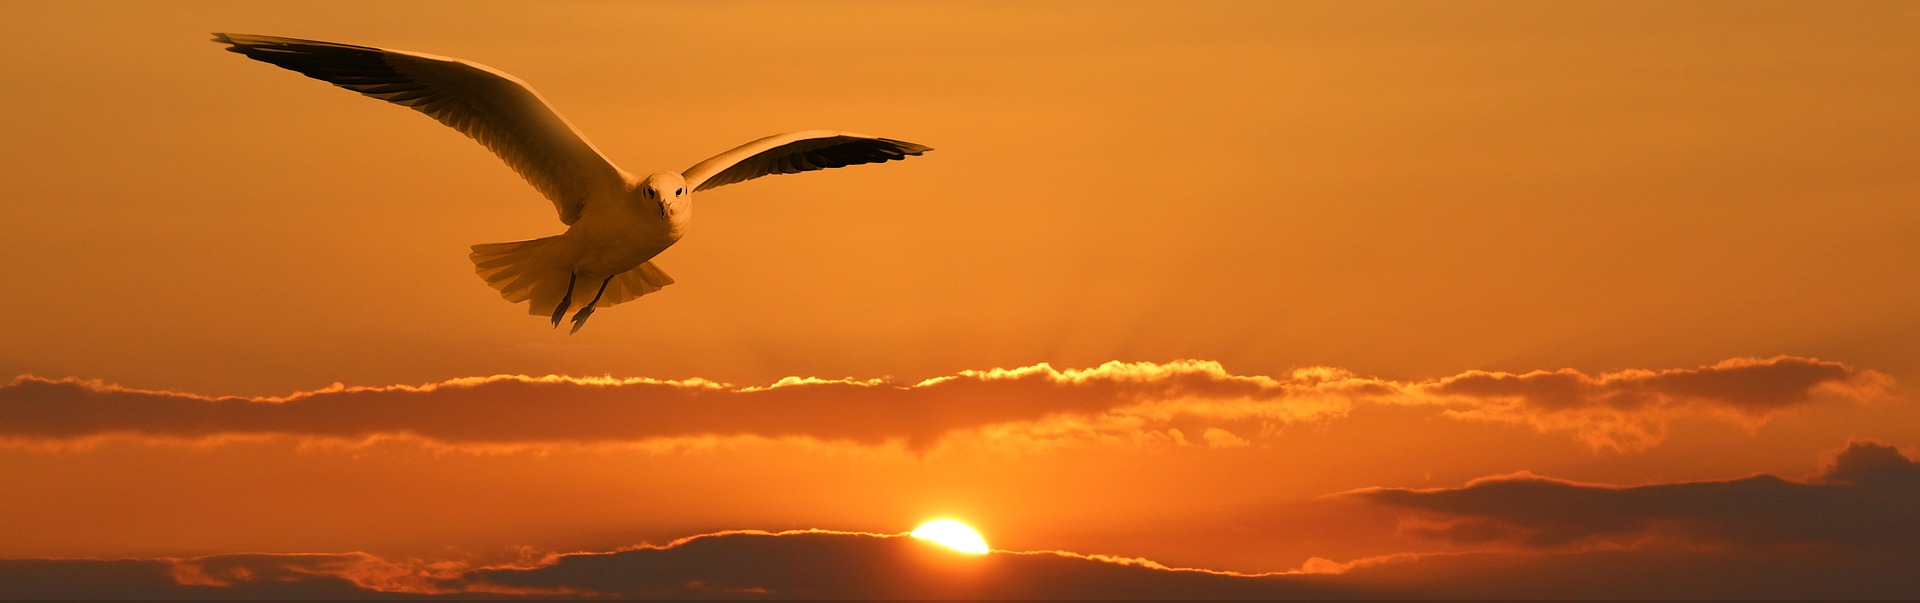 https://pixabay.com/en/gull-bird-fly-orange-sunset-sun-1090835/